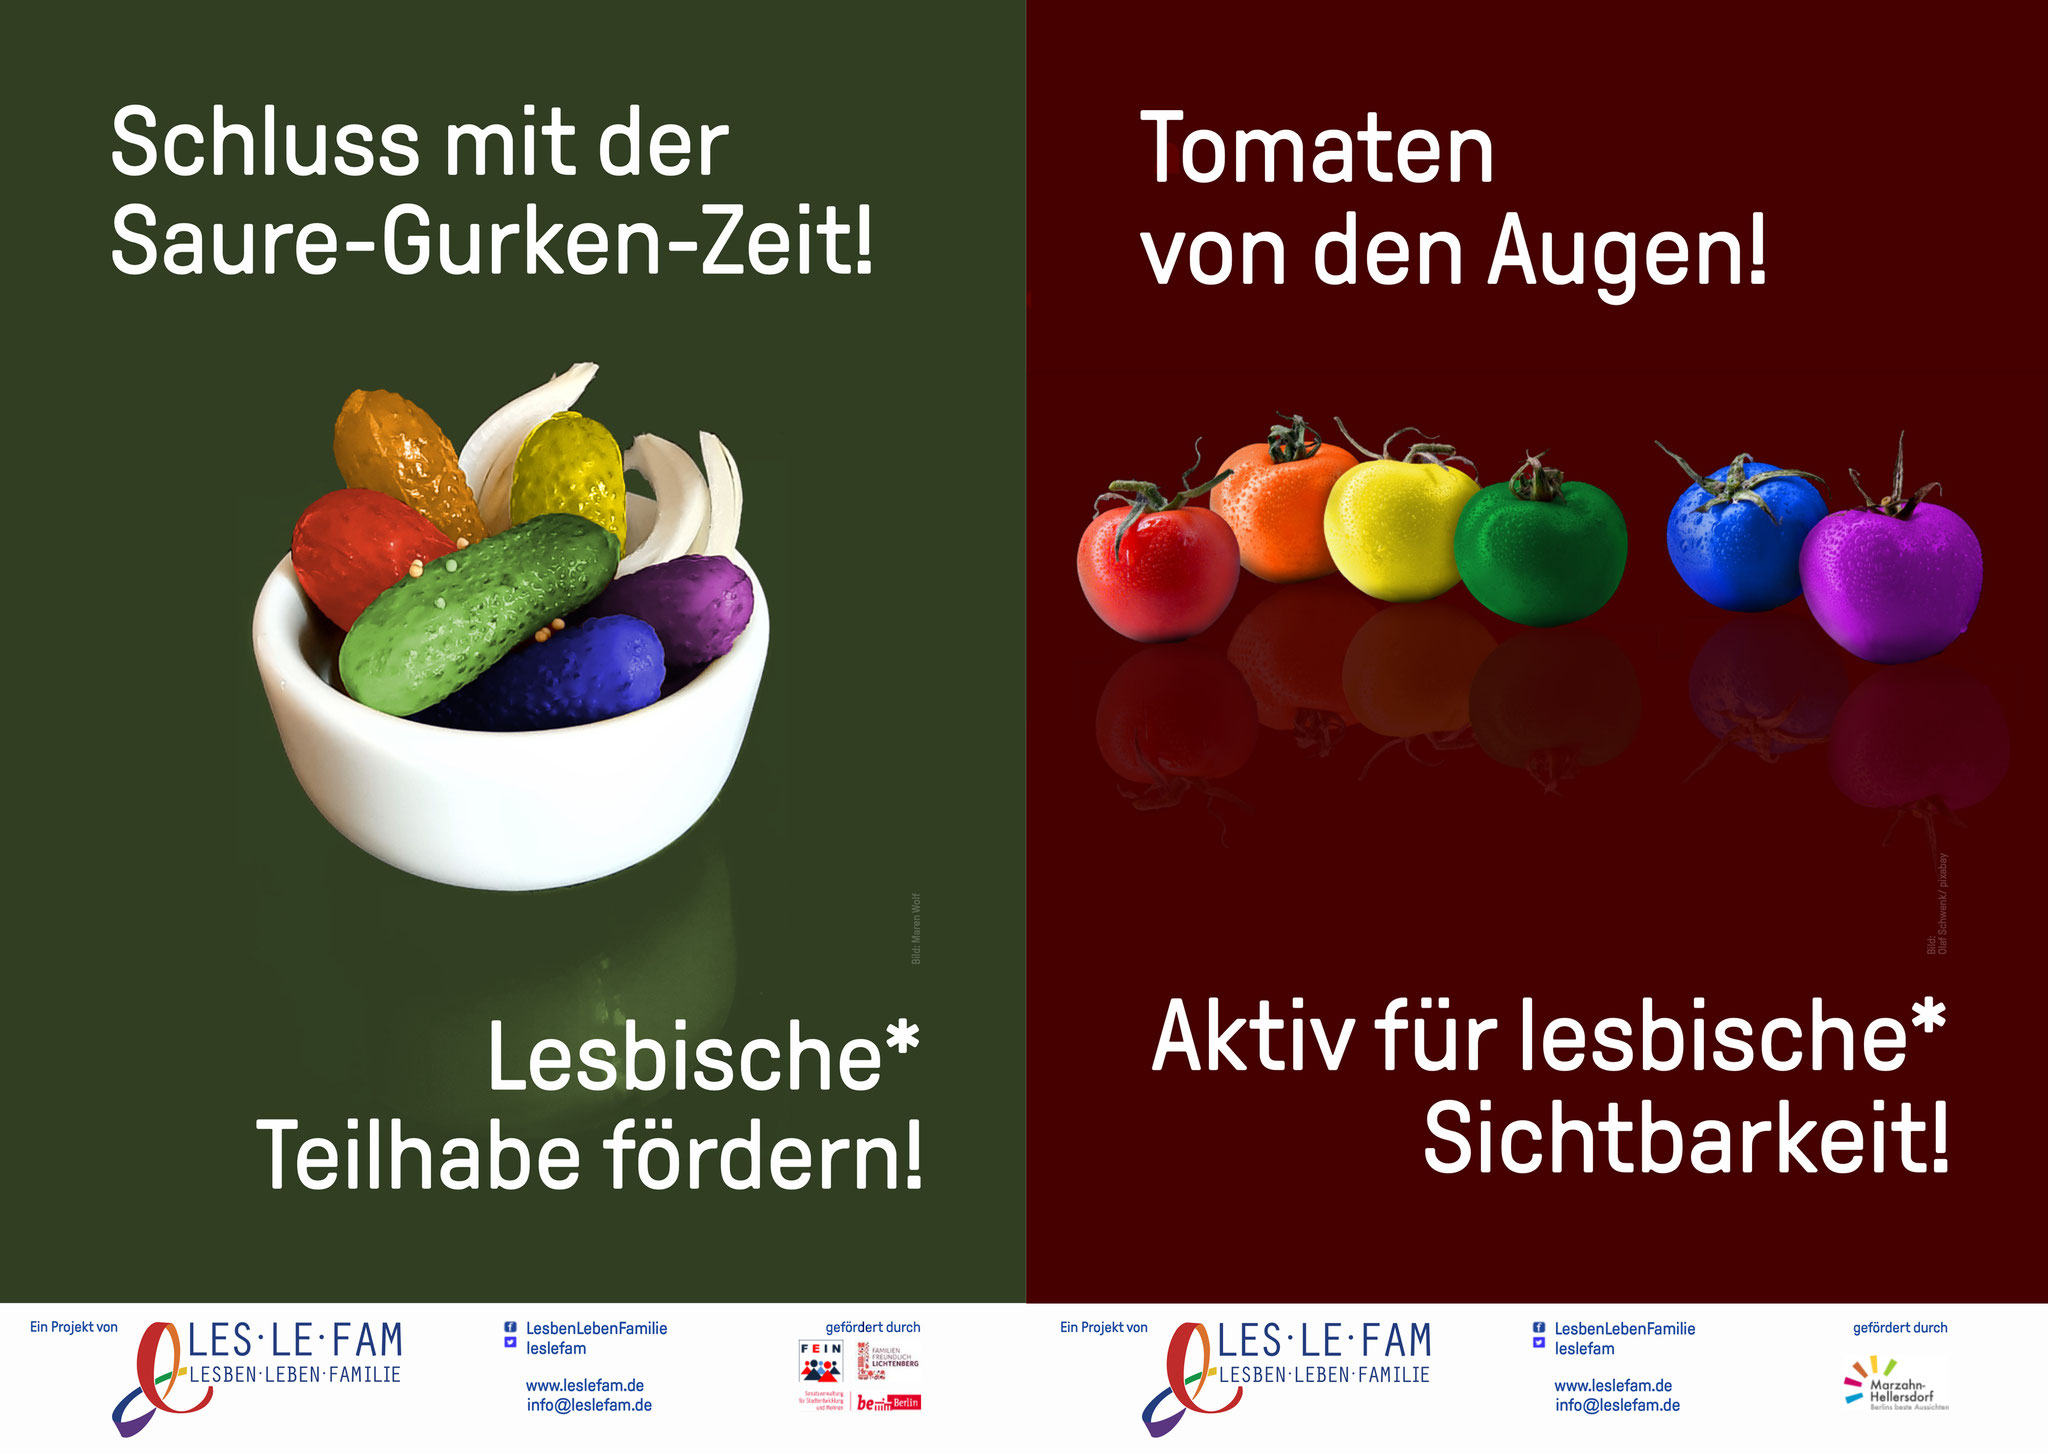 26. April: Zum internationalen Tag der lesbischen Sichtbarkeit startet der Verein Lesben Leben Familie (LesLeFam) eine Plakatkampagne mit vier verschiedenen Motiven. 